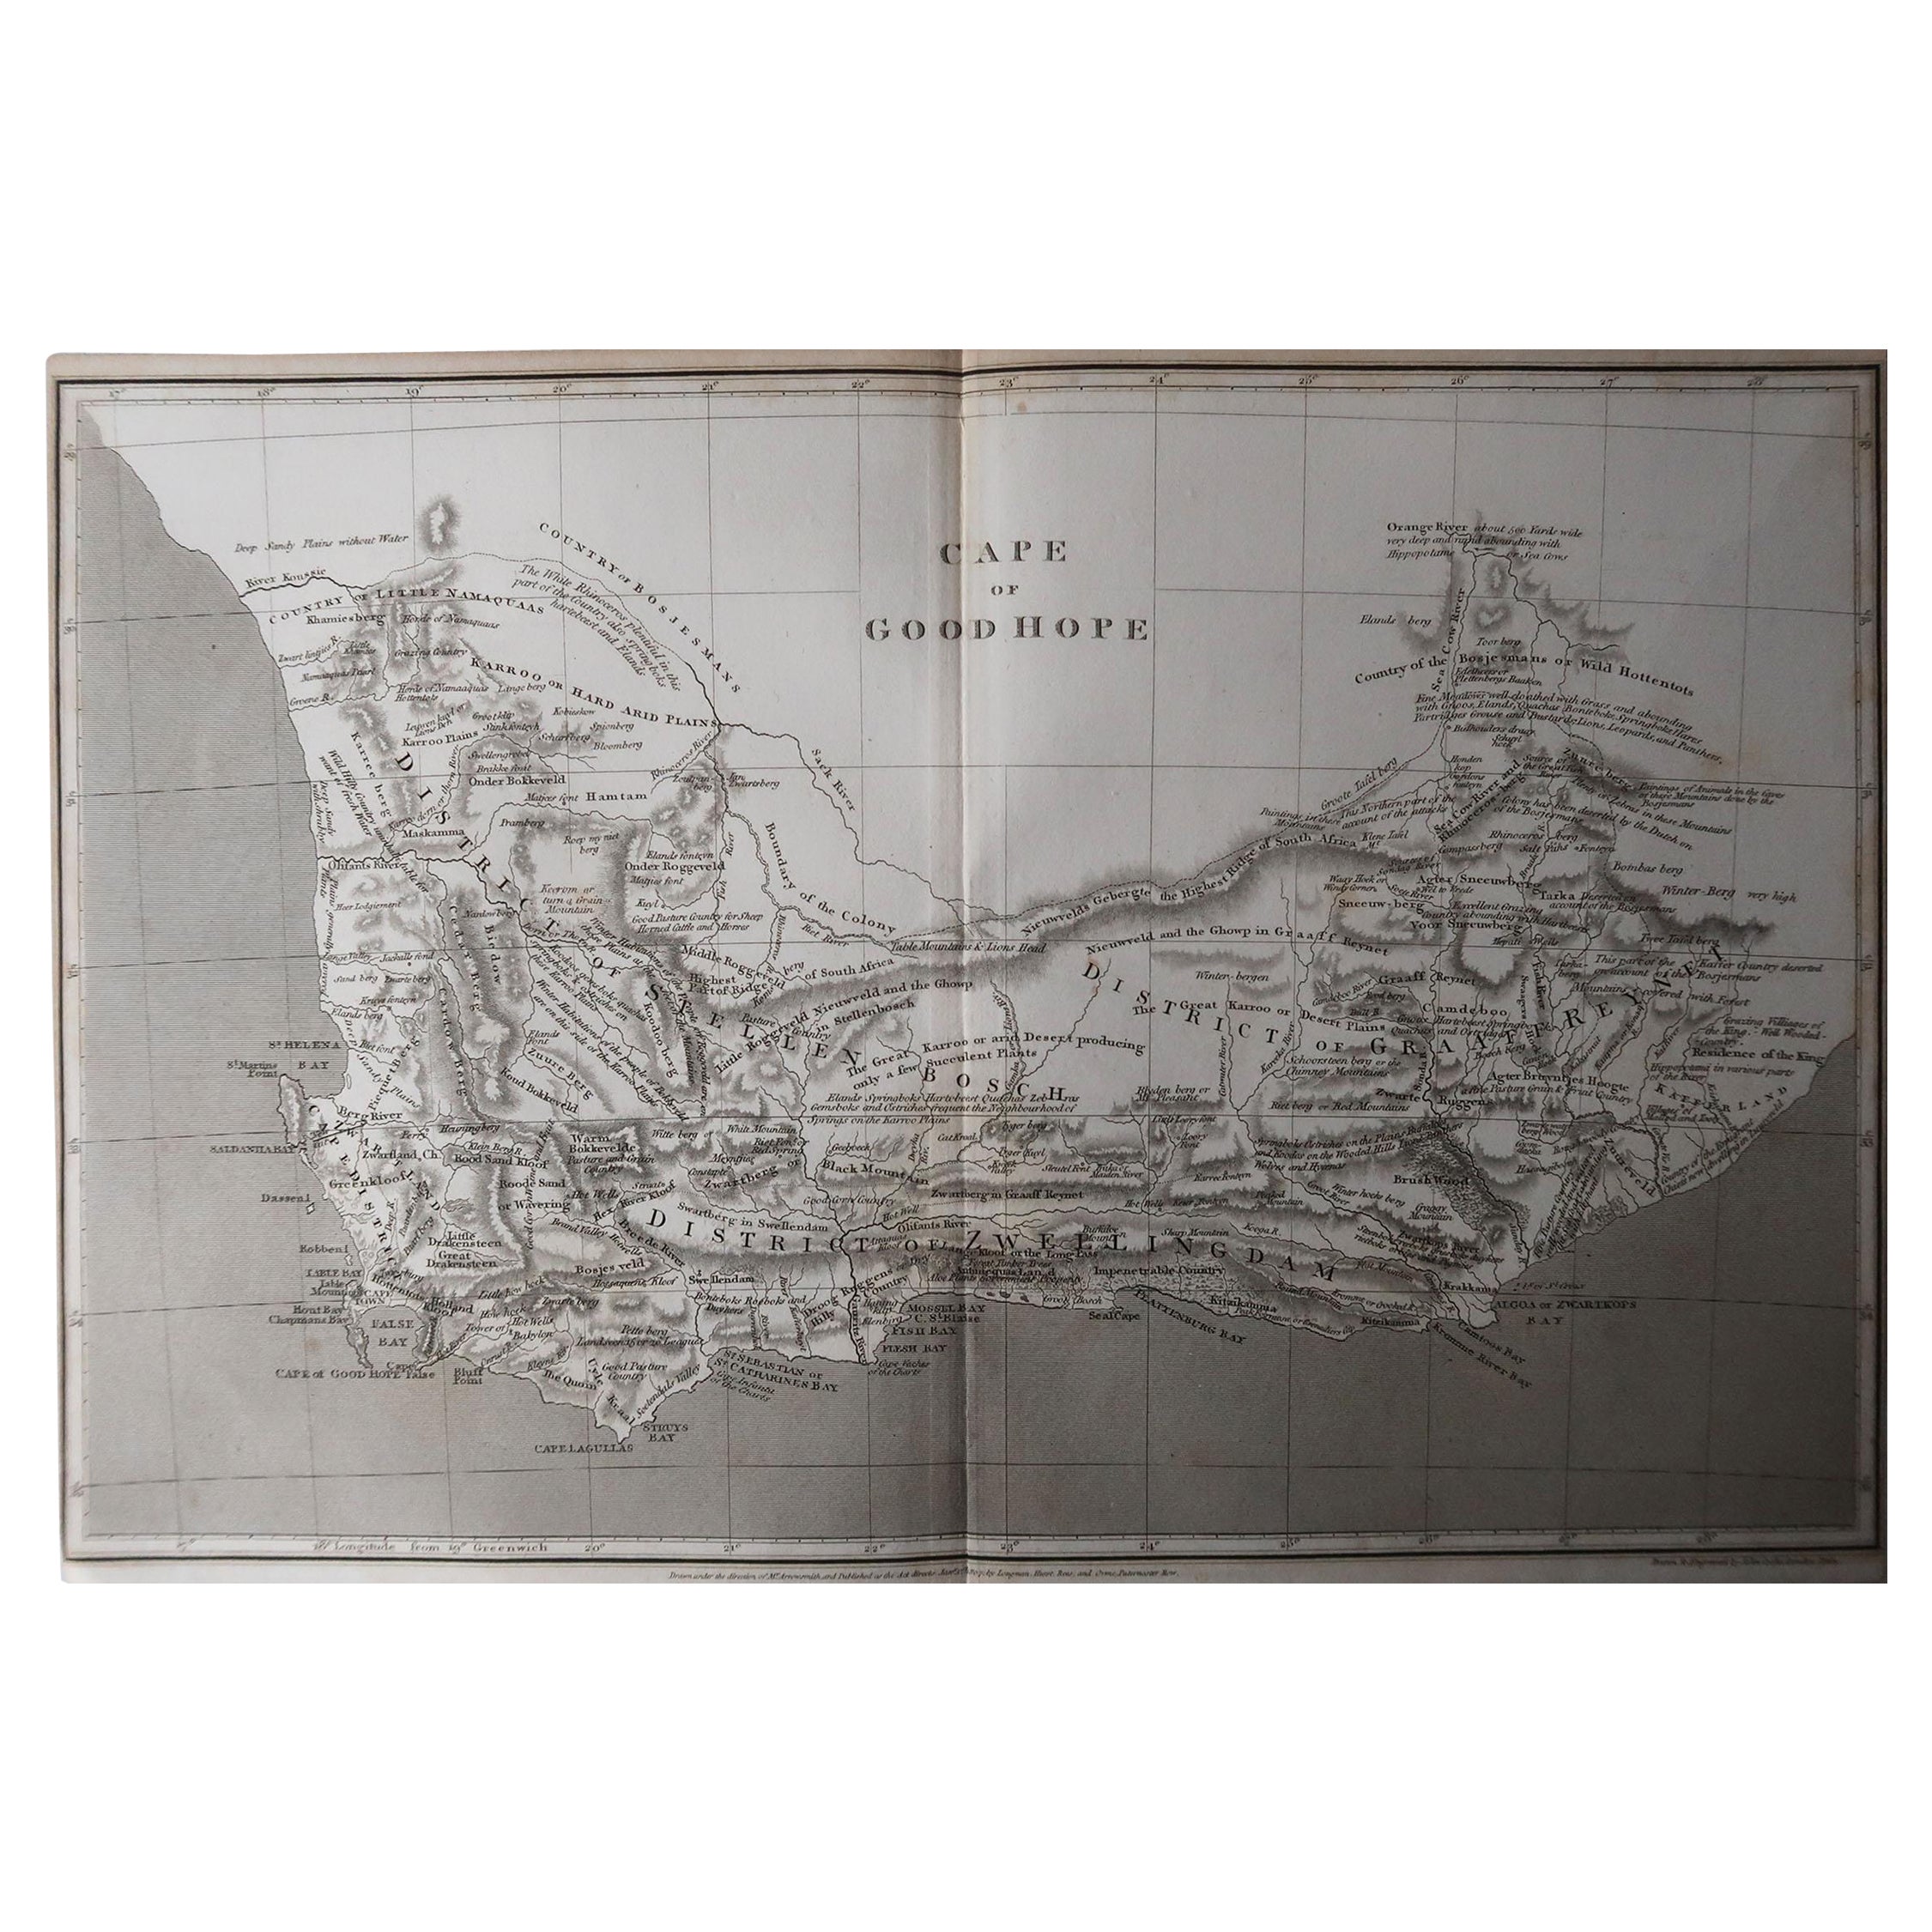 Superbe carte de l'Afrique du Sud.

Dessiné sous la direction d'Arrowsmith.

Gravure sur cuivre.

Publié par Longman, Hurst, Rees, Orme et Brown, 1820

Non encadré.